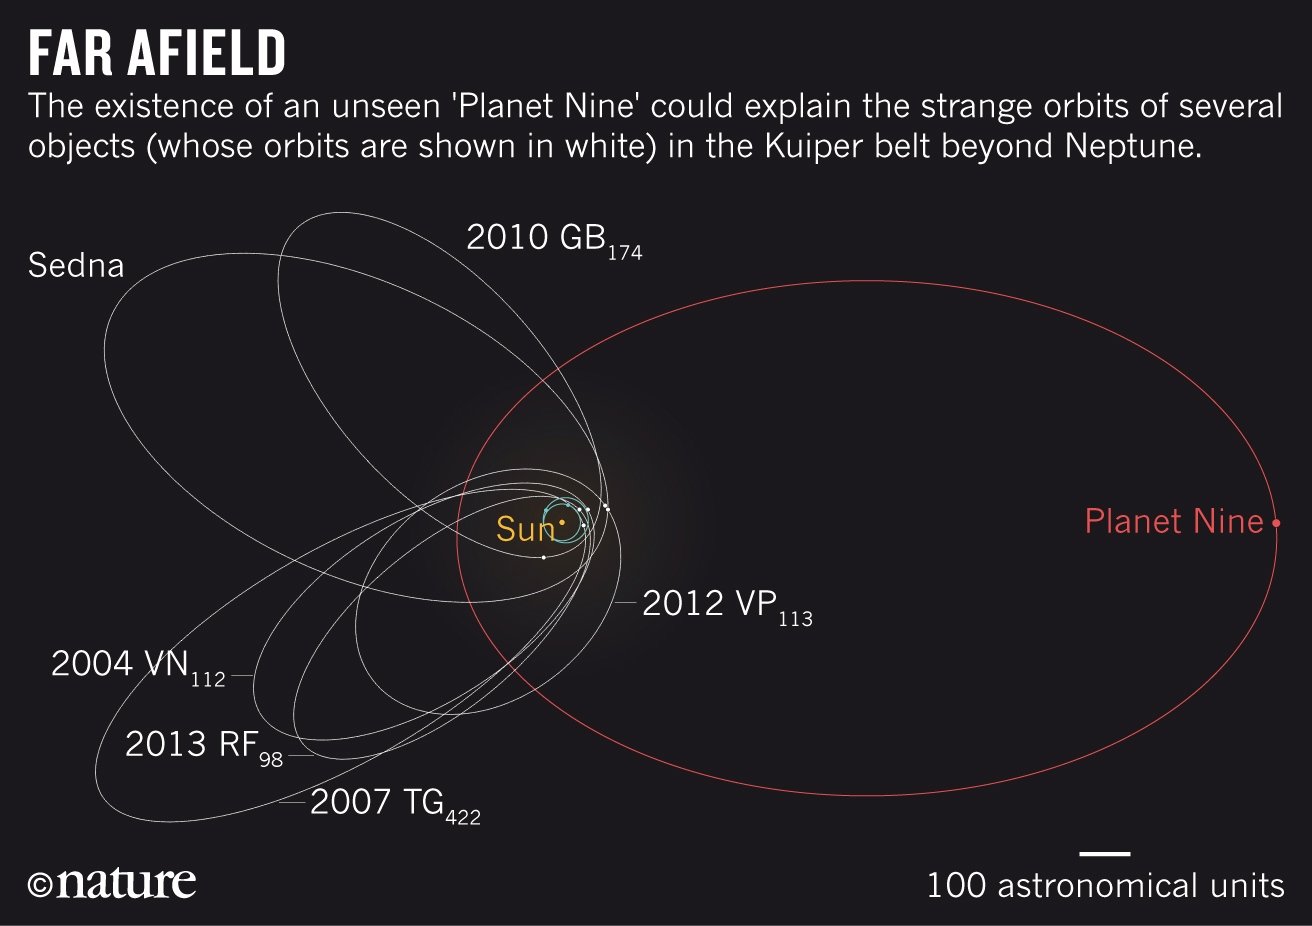 Objects in orbit Kuiper belt